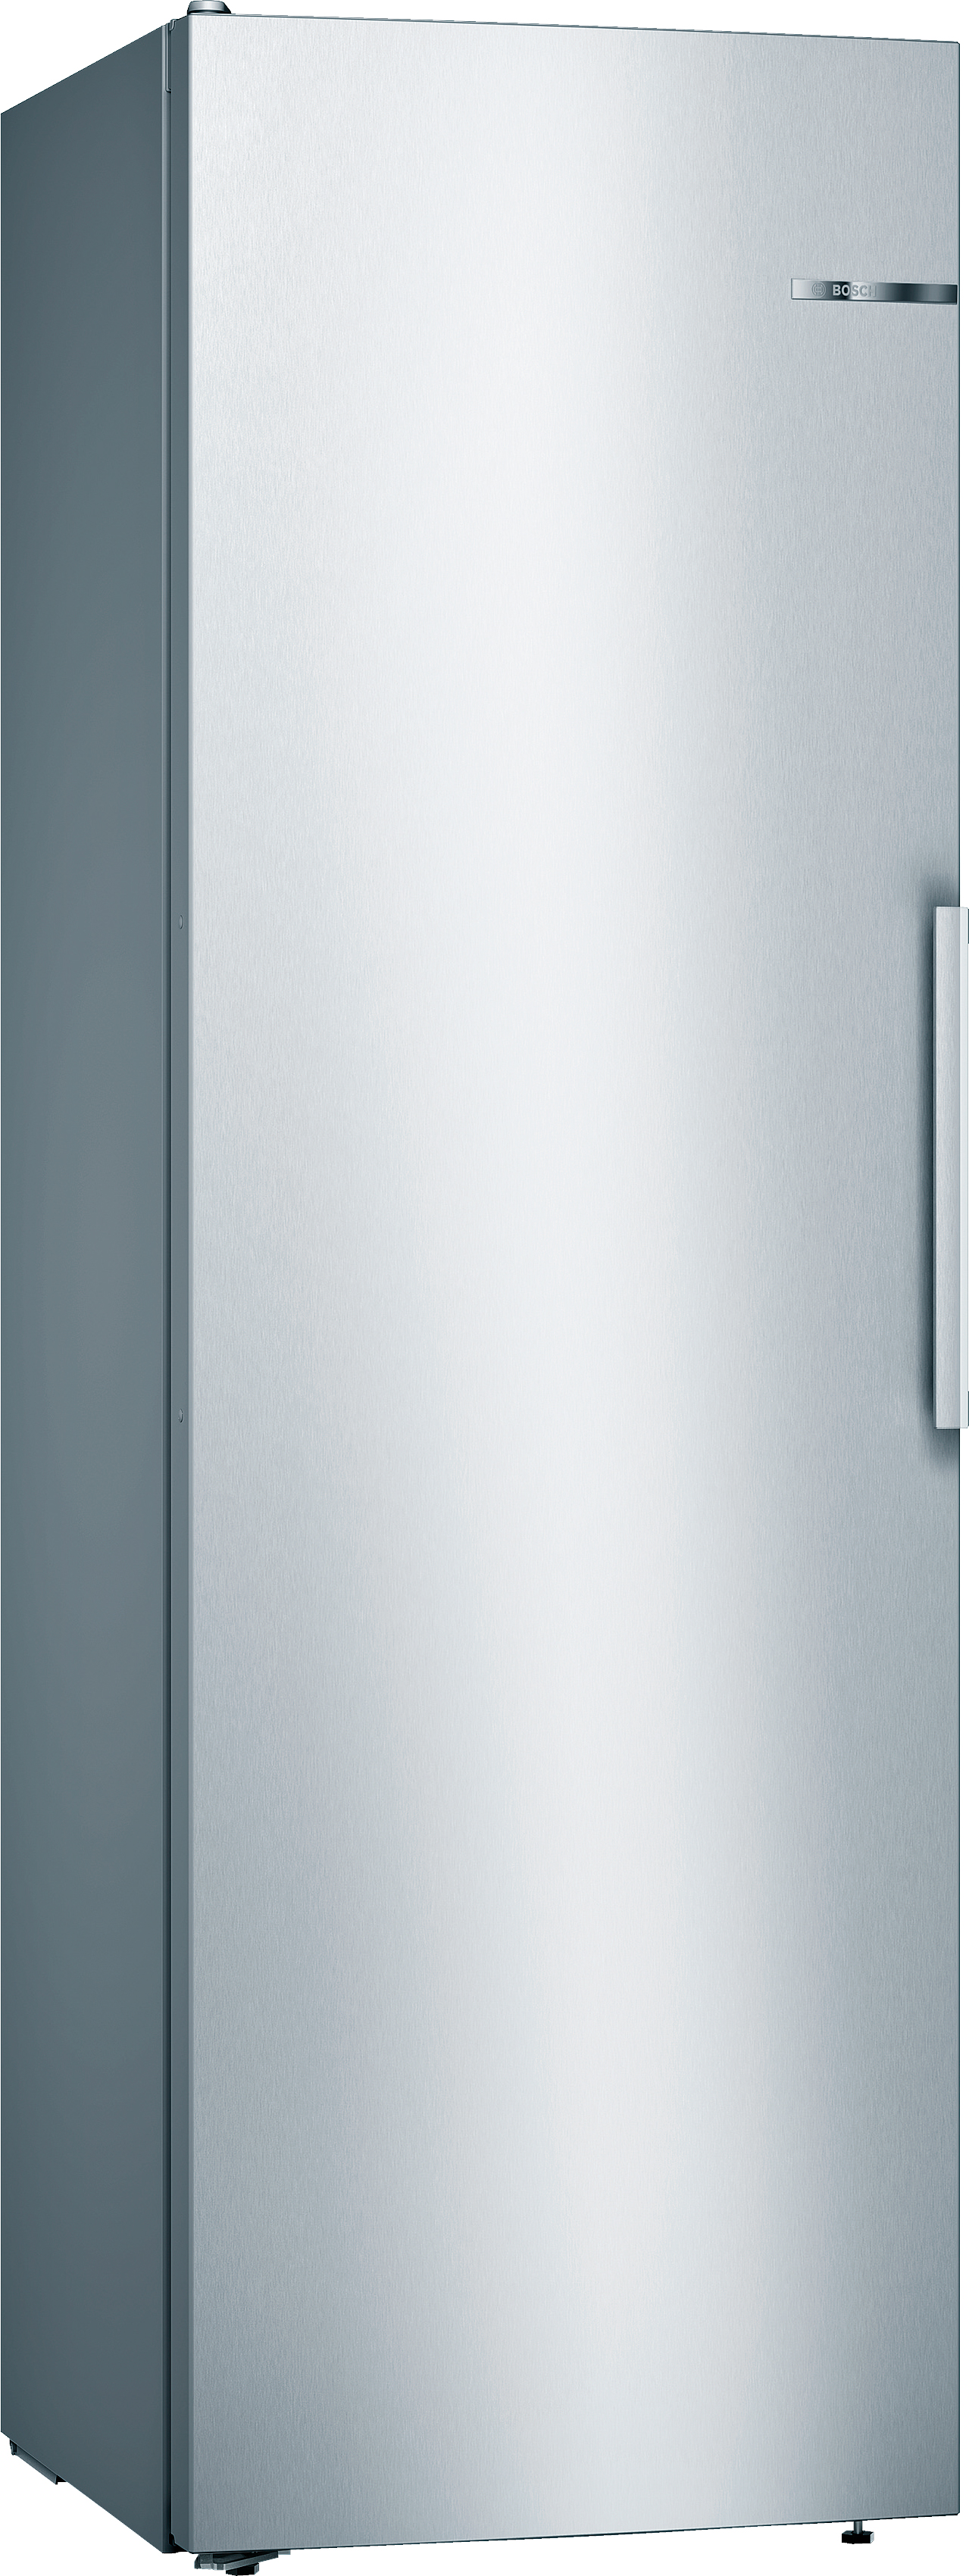 Холодильник Bosch KSV36VL30U в интернет-магазине, главное фото